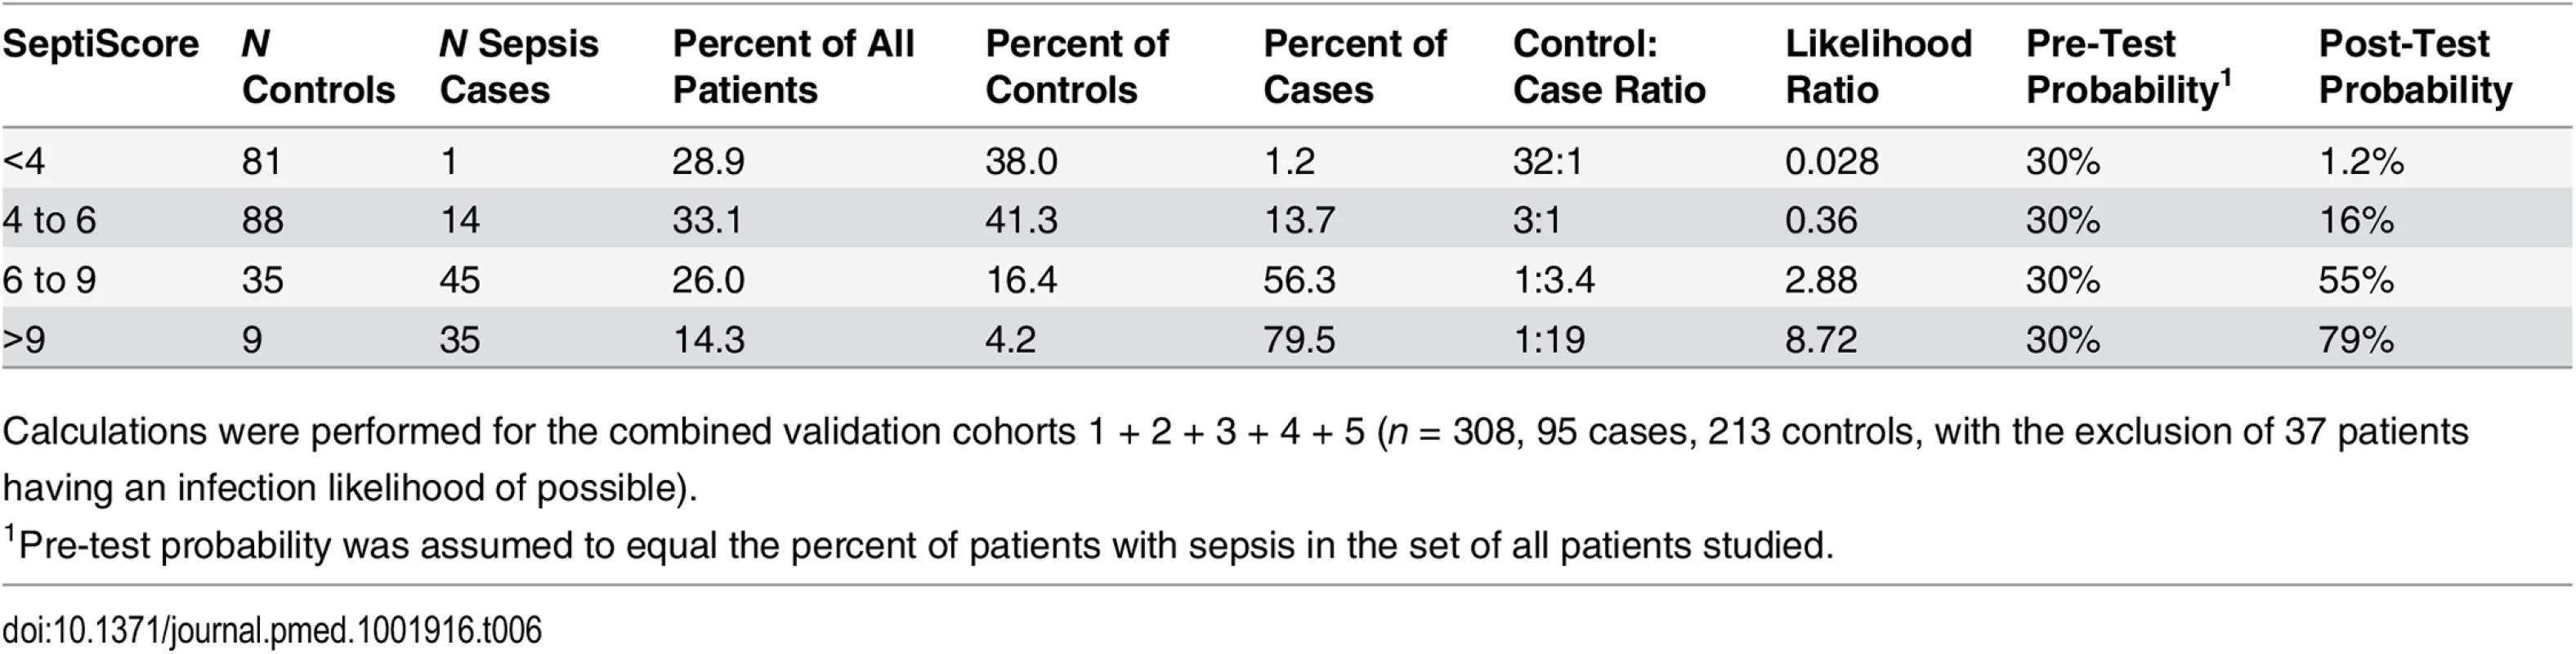 SeptiScores, likelihood ratios, and disease probabilities.